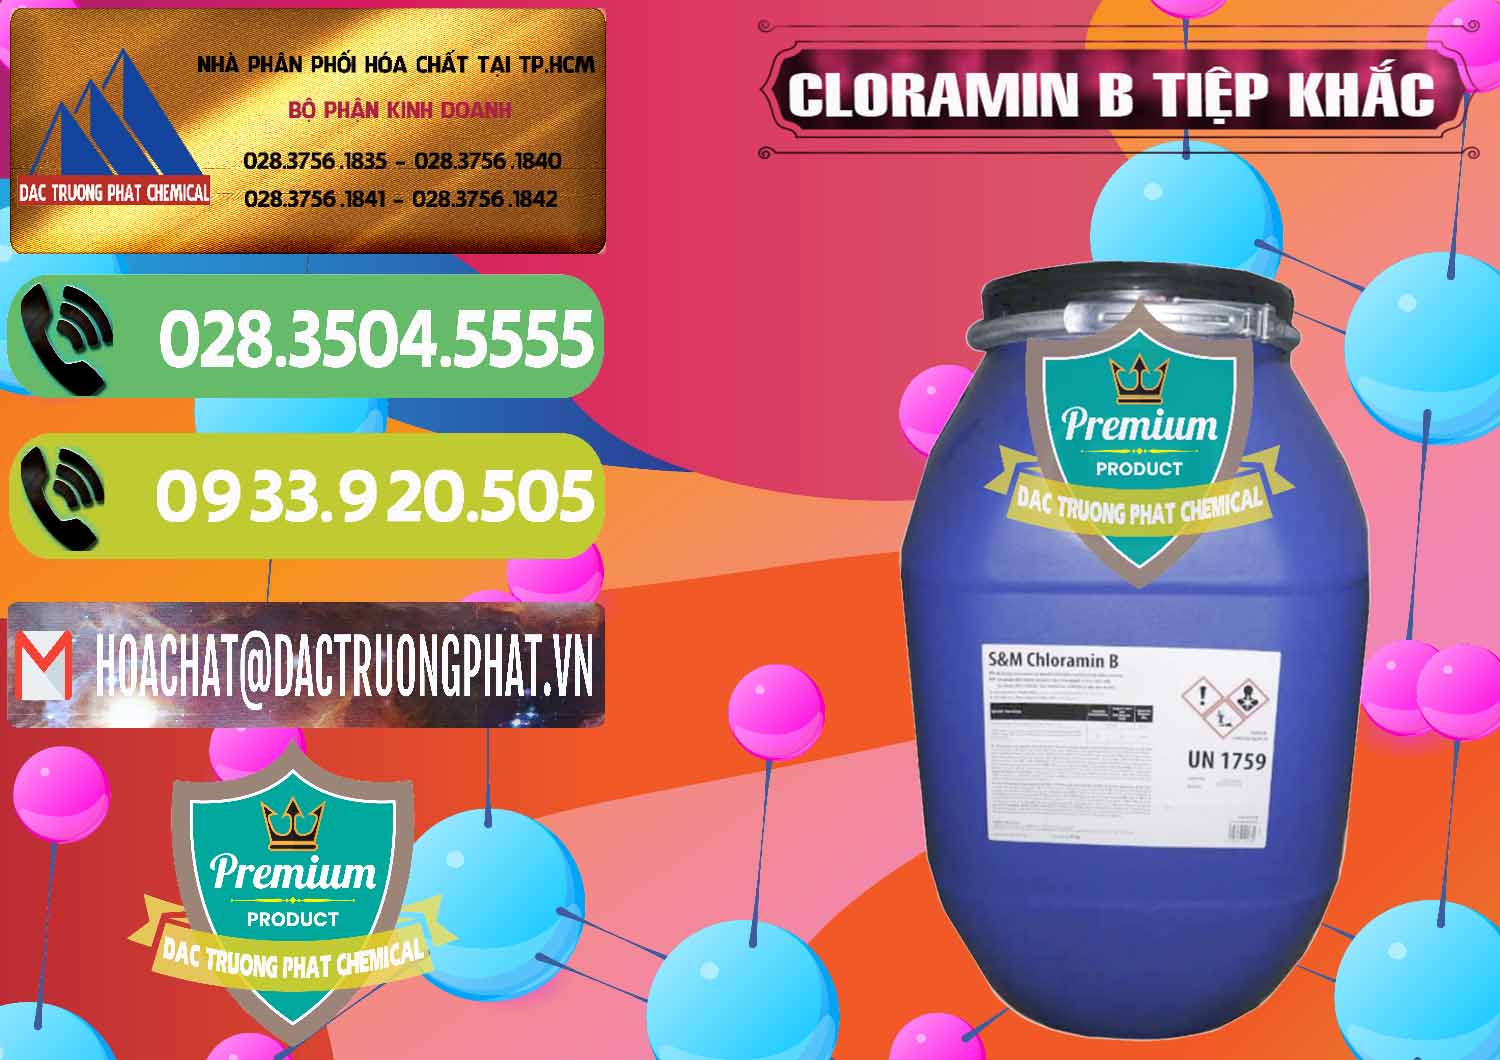 Cty chuyên bán và cung ứng Cloramin B Cộng Hòa Séc Tiệp Khắc Czech Republic - 0299 - Đơn vị chuyên bán & cung cấp hóa chất tại TP.HCM - hoachatmientay.vn